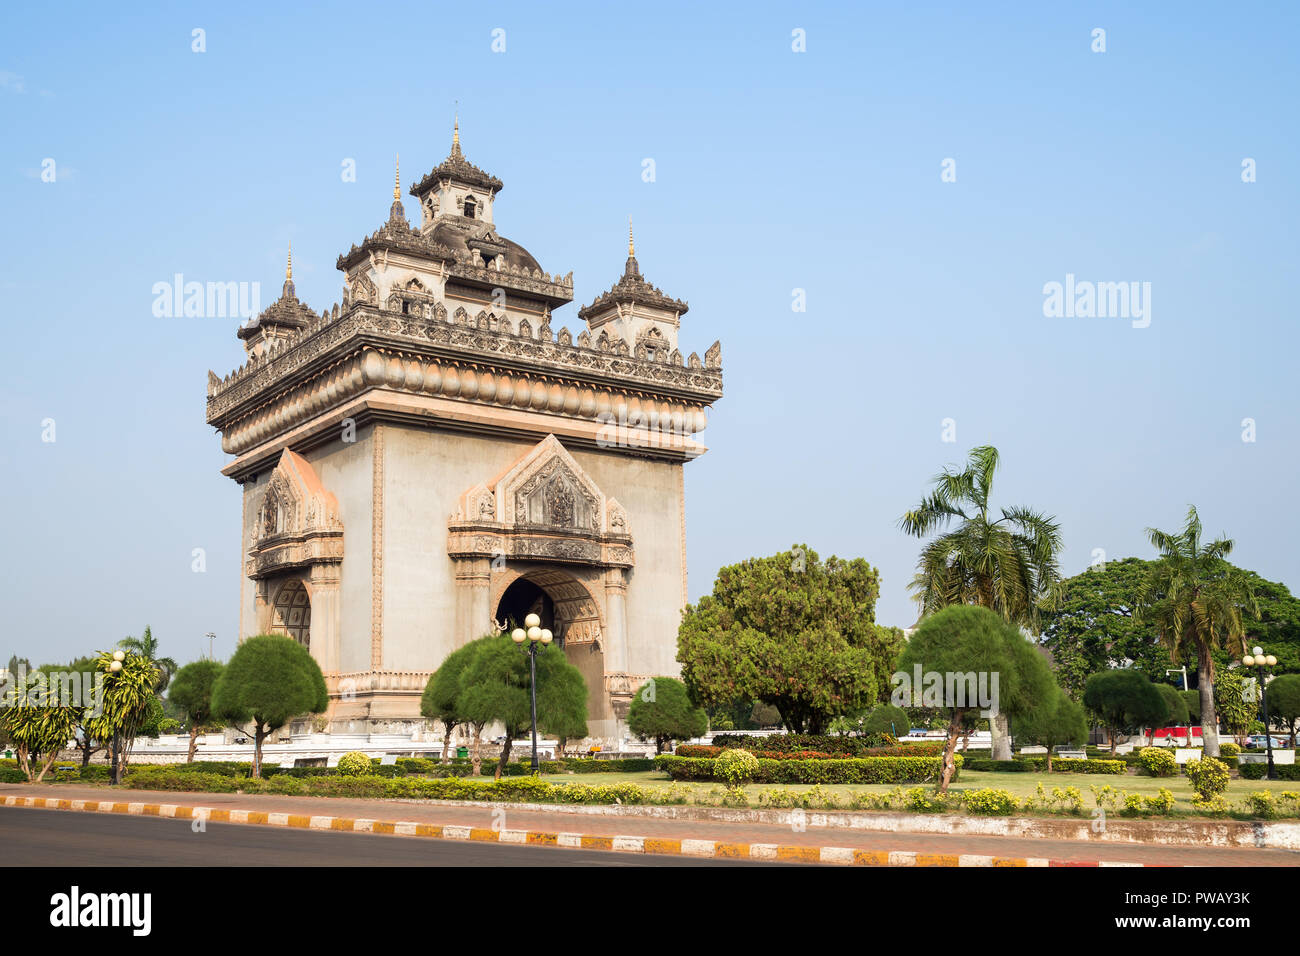 Patuxai (Patuxay), vittoria gate o gate del trionfo, monumento di guerra e il parco di Vientiane, Laos, in una giornata di sole. Foto Stock